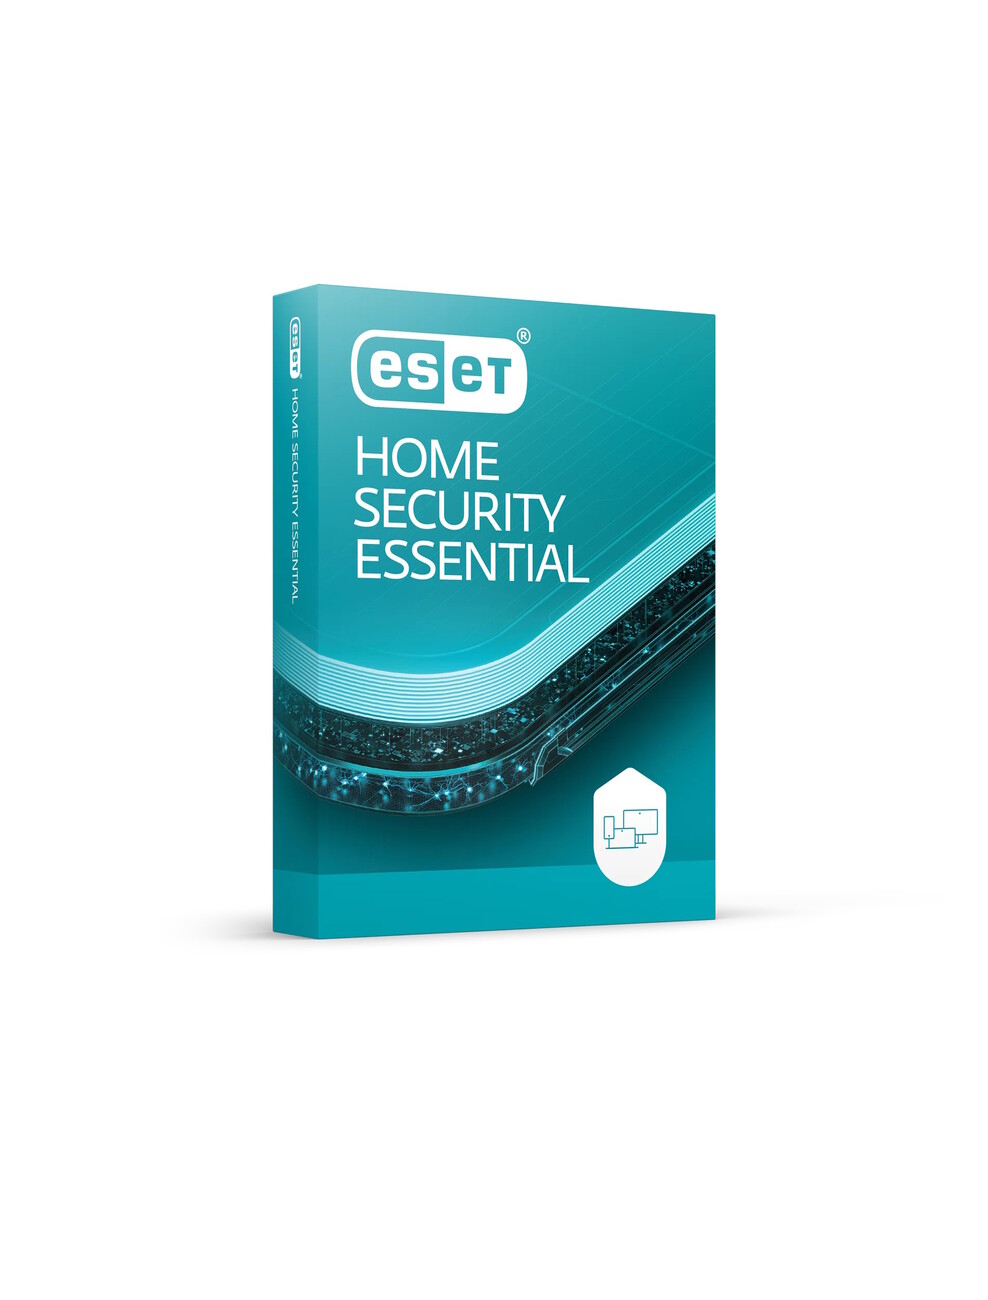 ESET HOME SECURITY ESSENTIAL EX INTERNET SECURITY ESET